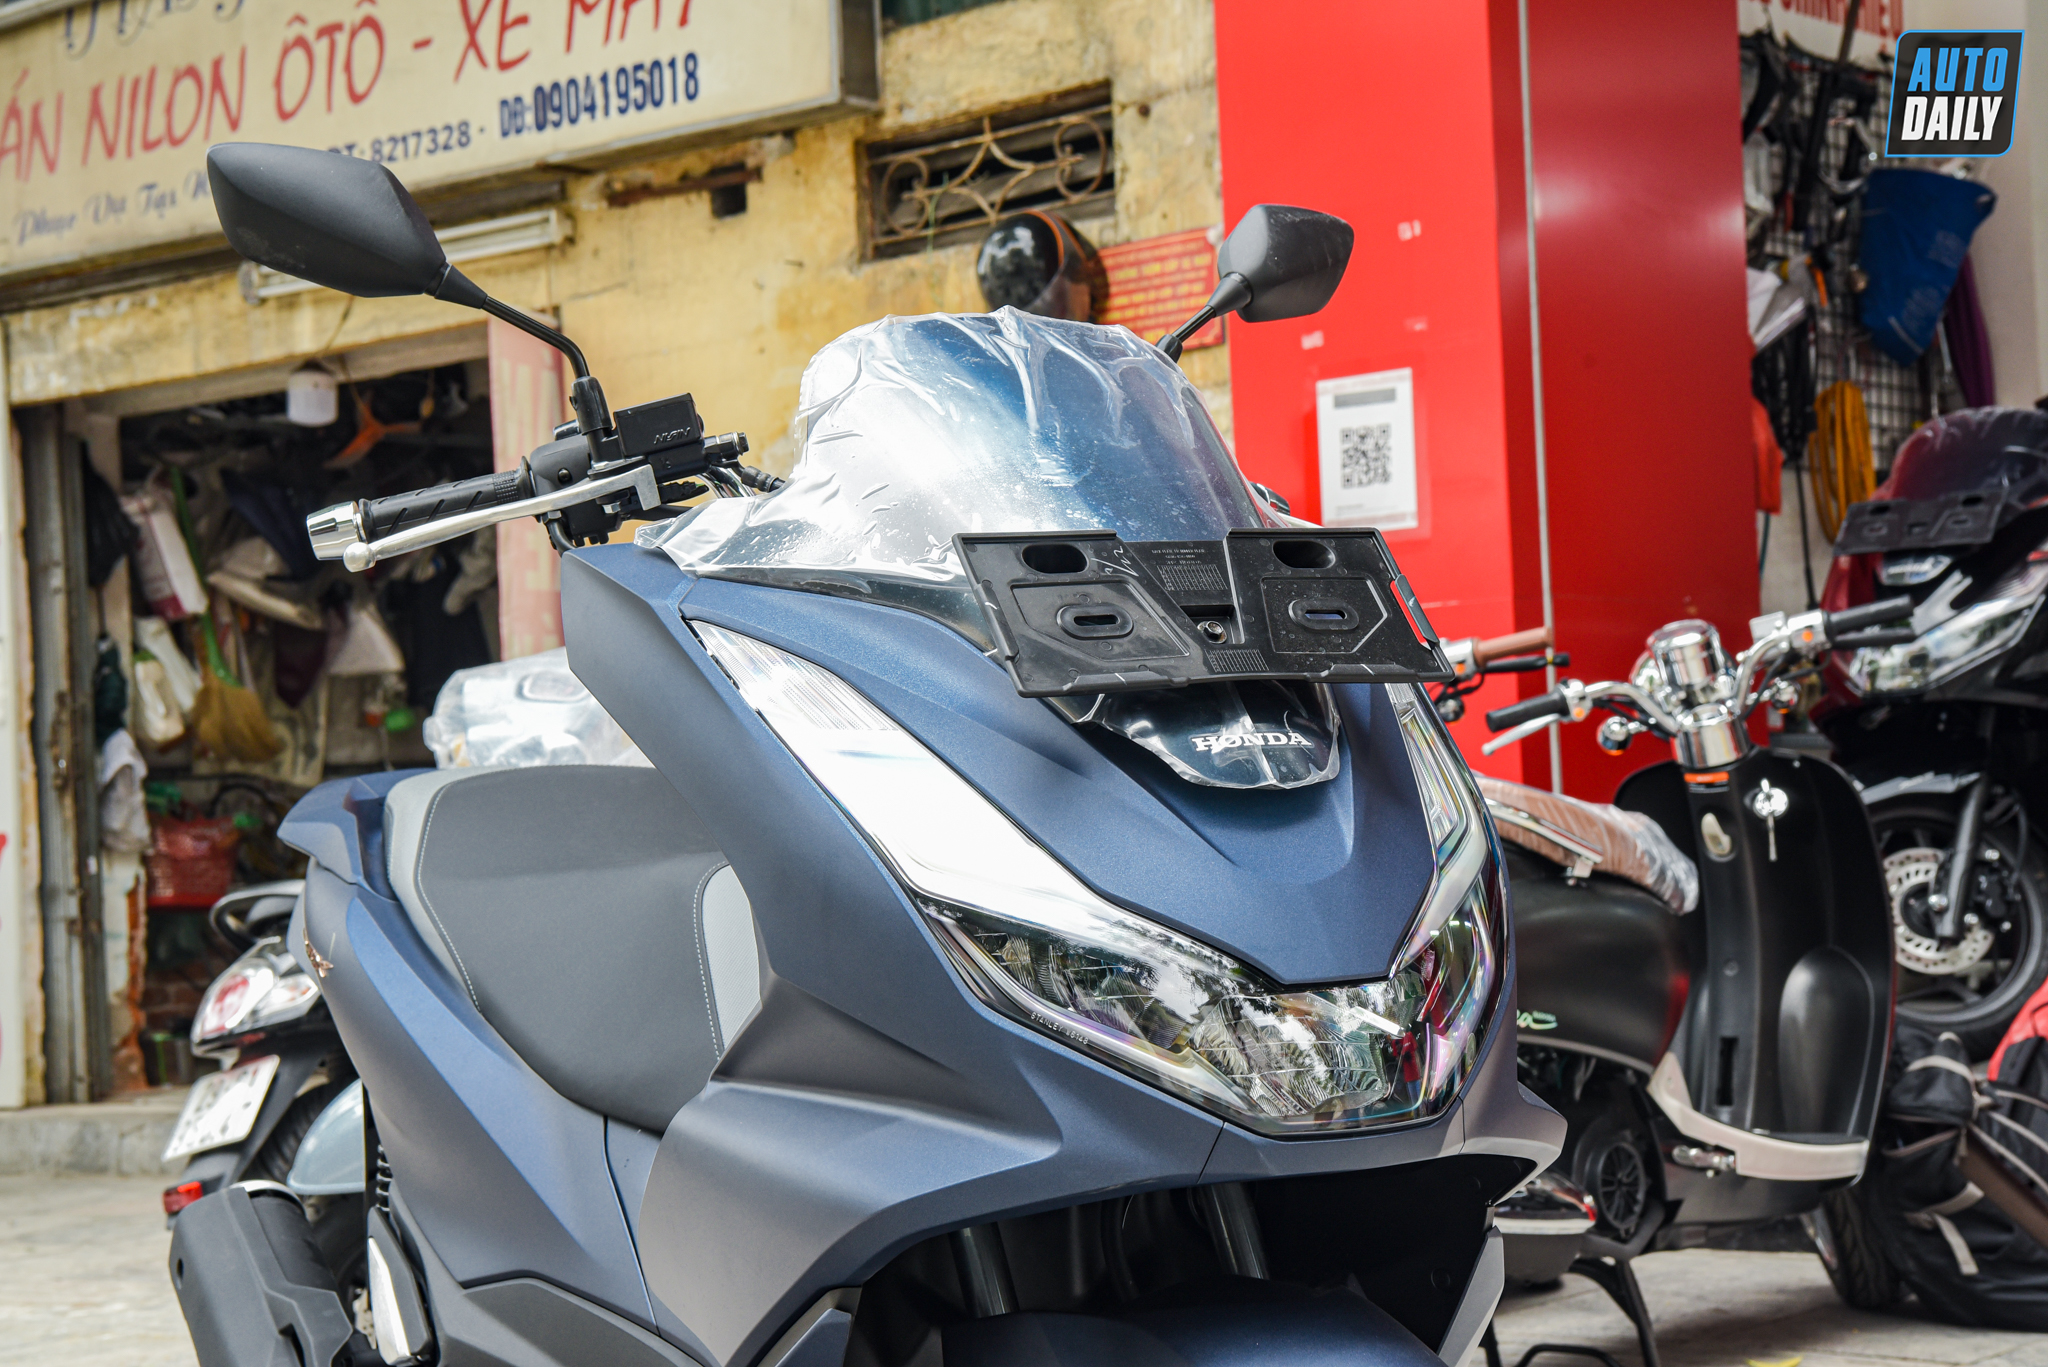 Honda PCX 160 2022 màu xanh mờ giá 90 triệu đồng tại Hà Nội adt-1601.jpg